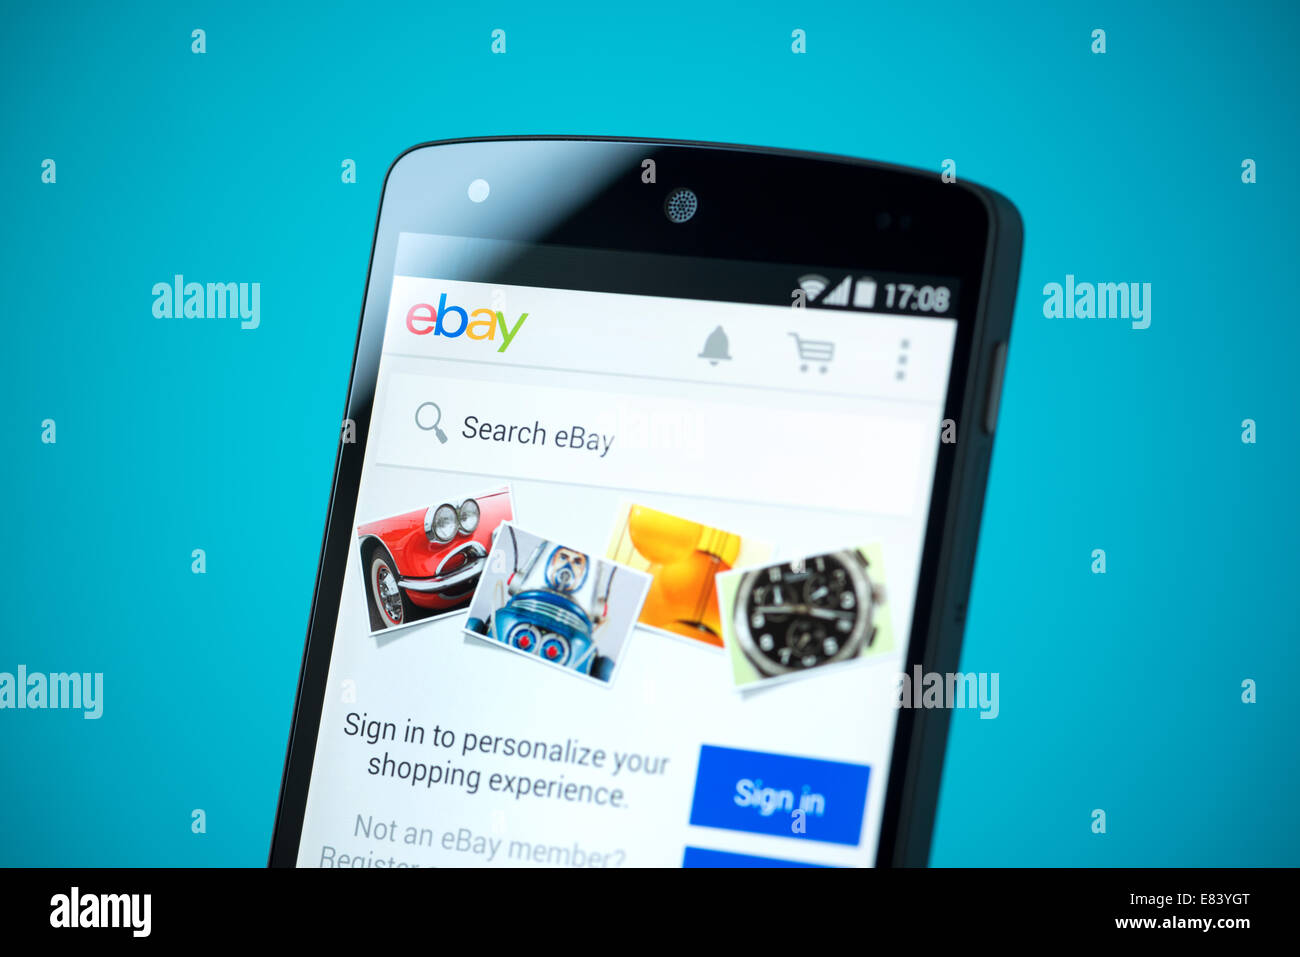 Inquadratura ravvicinata del nuovissimo Google Nexus 5, powered by Android 4.4 versione con eBay mobile sito web su uno schermo. Foto Stock